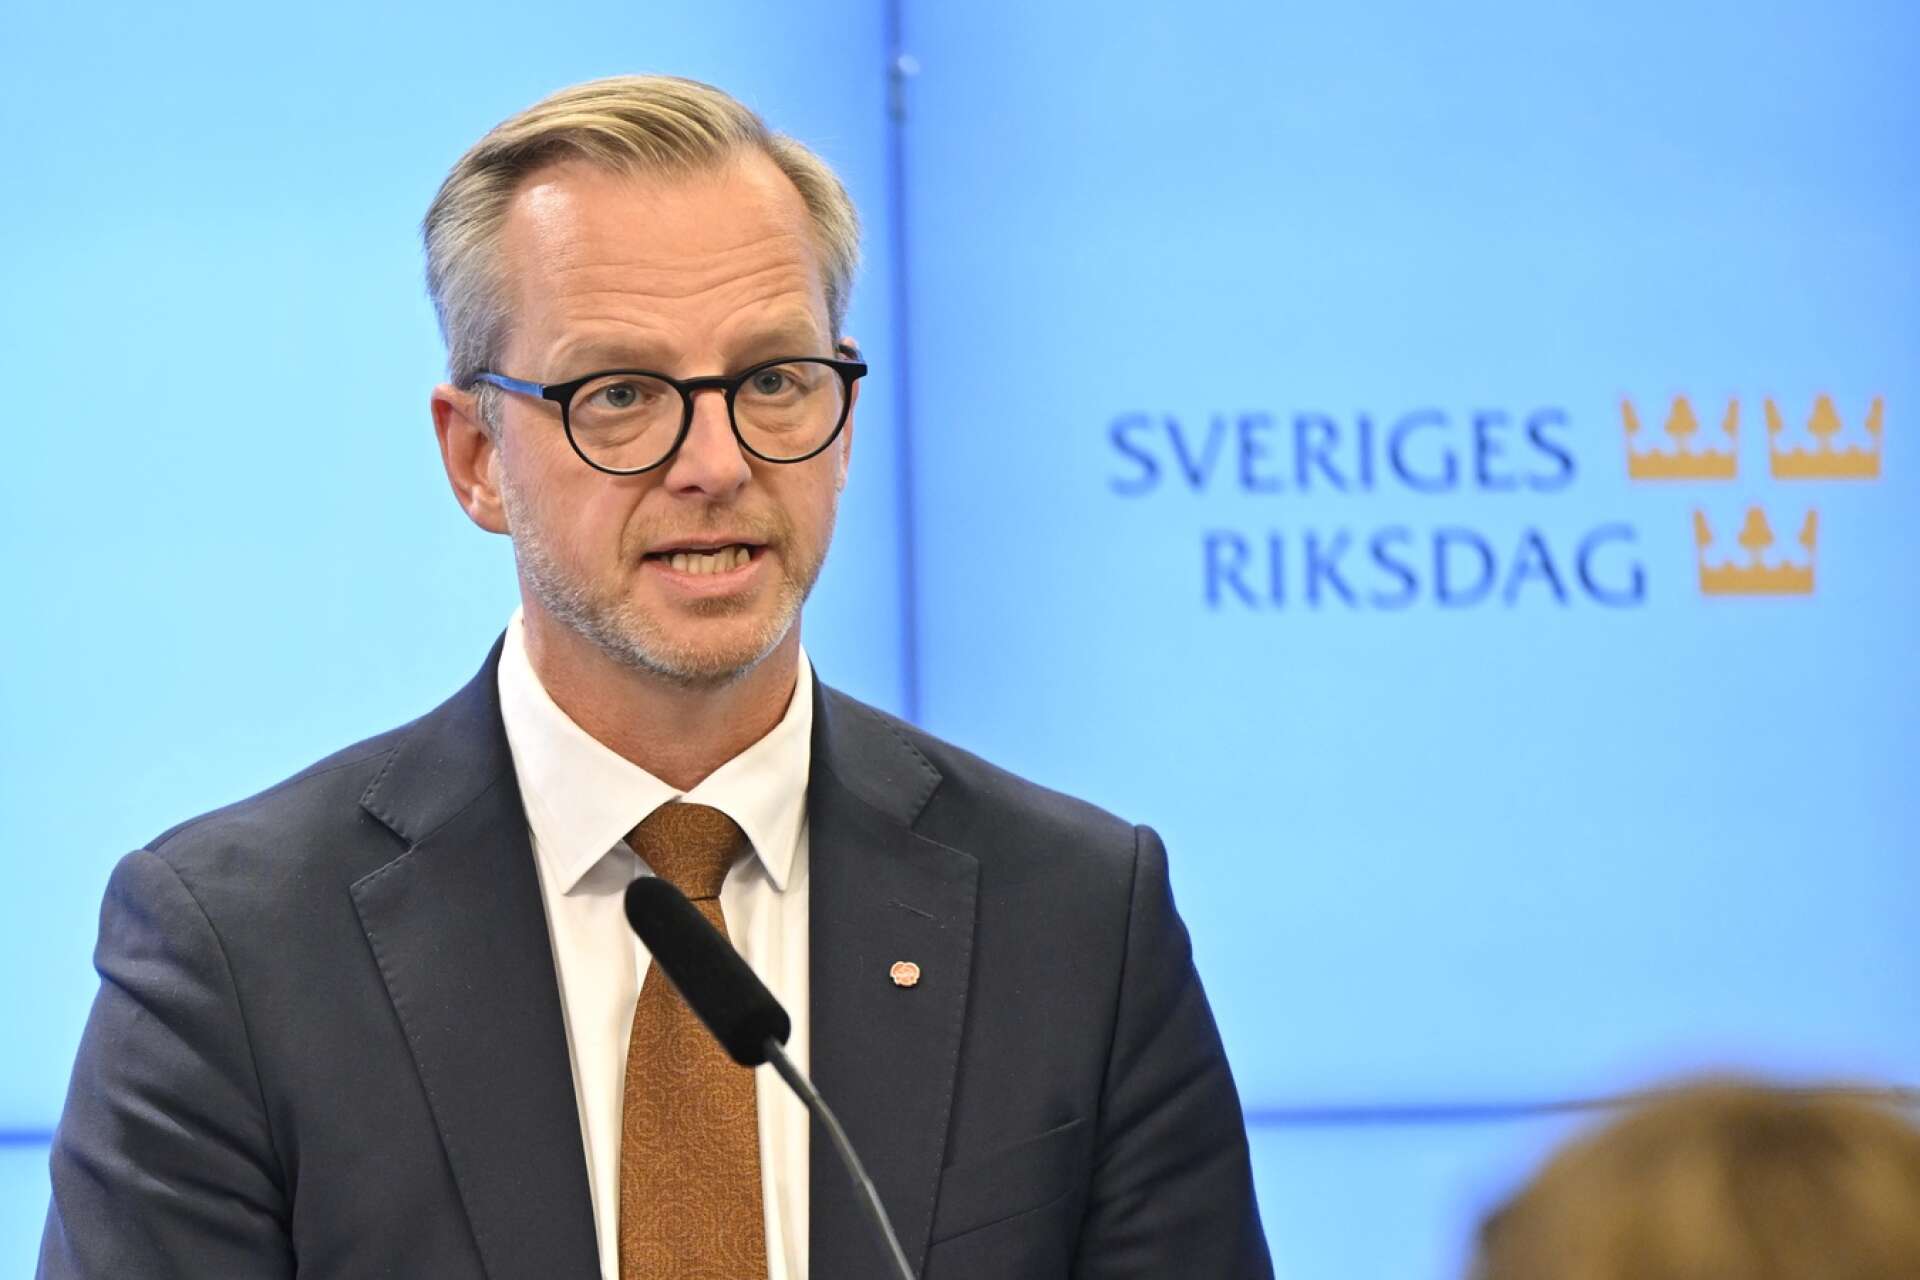 Socialdemokraternas ekonomiskpolitiska talesperson Mikael Damberg presenterade i dagarna partiets skuggbudget. 